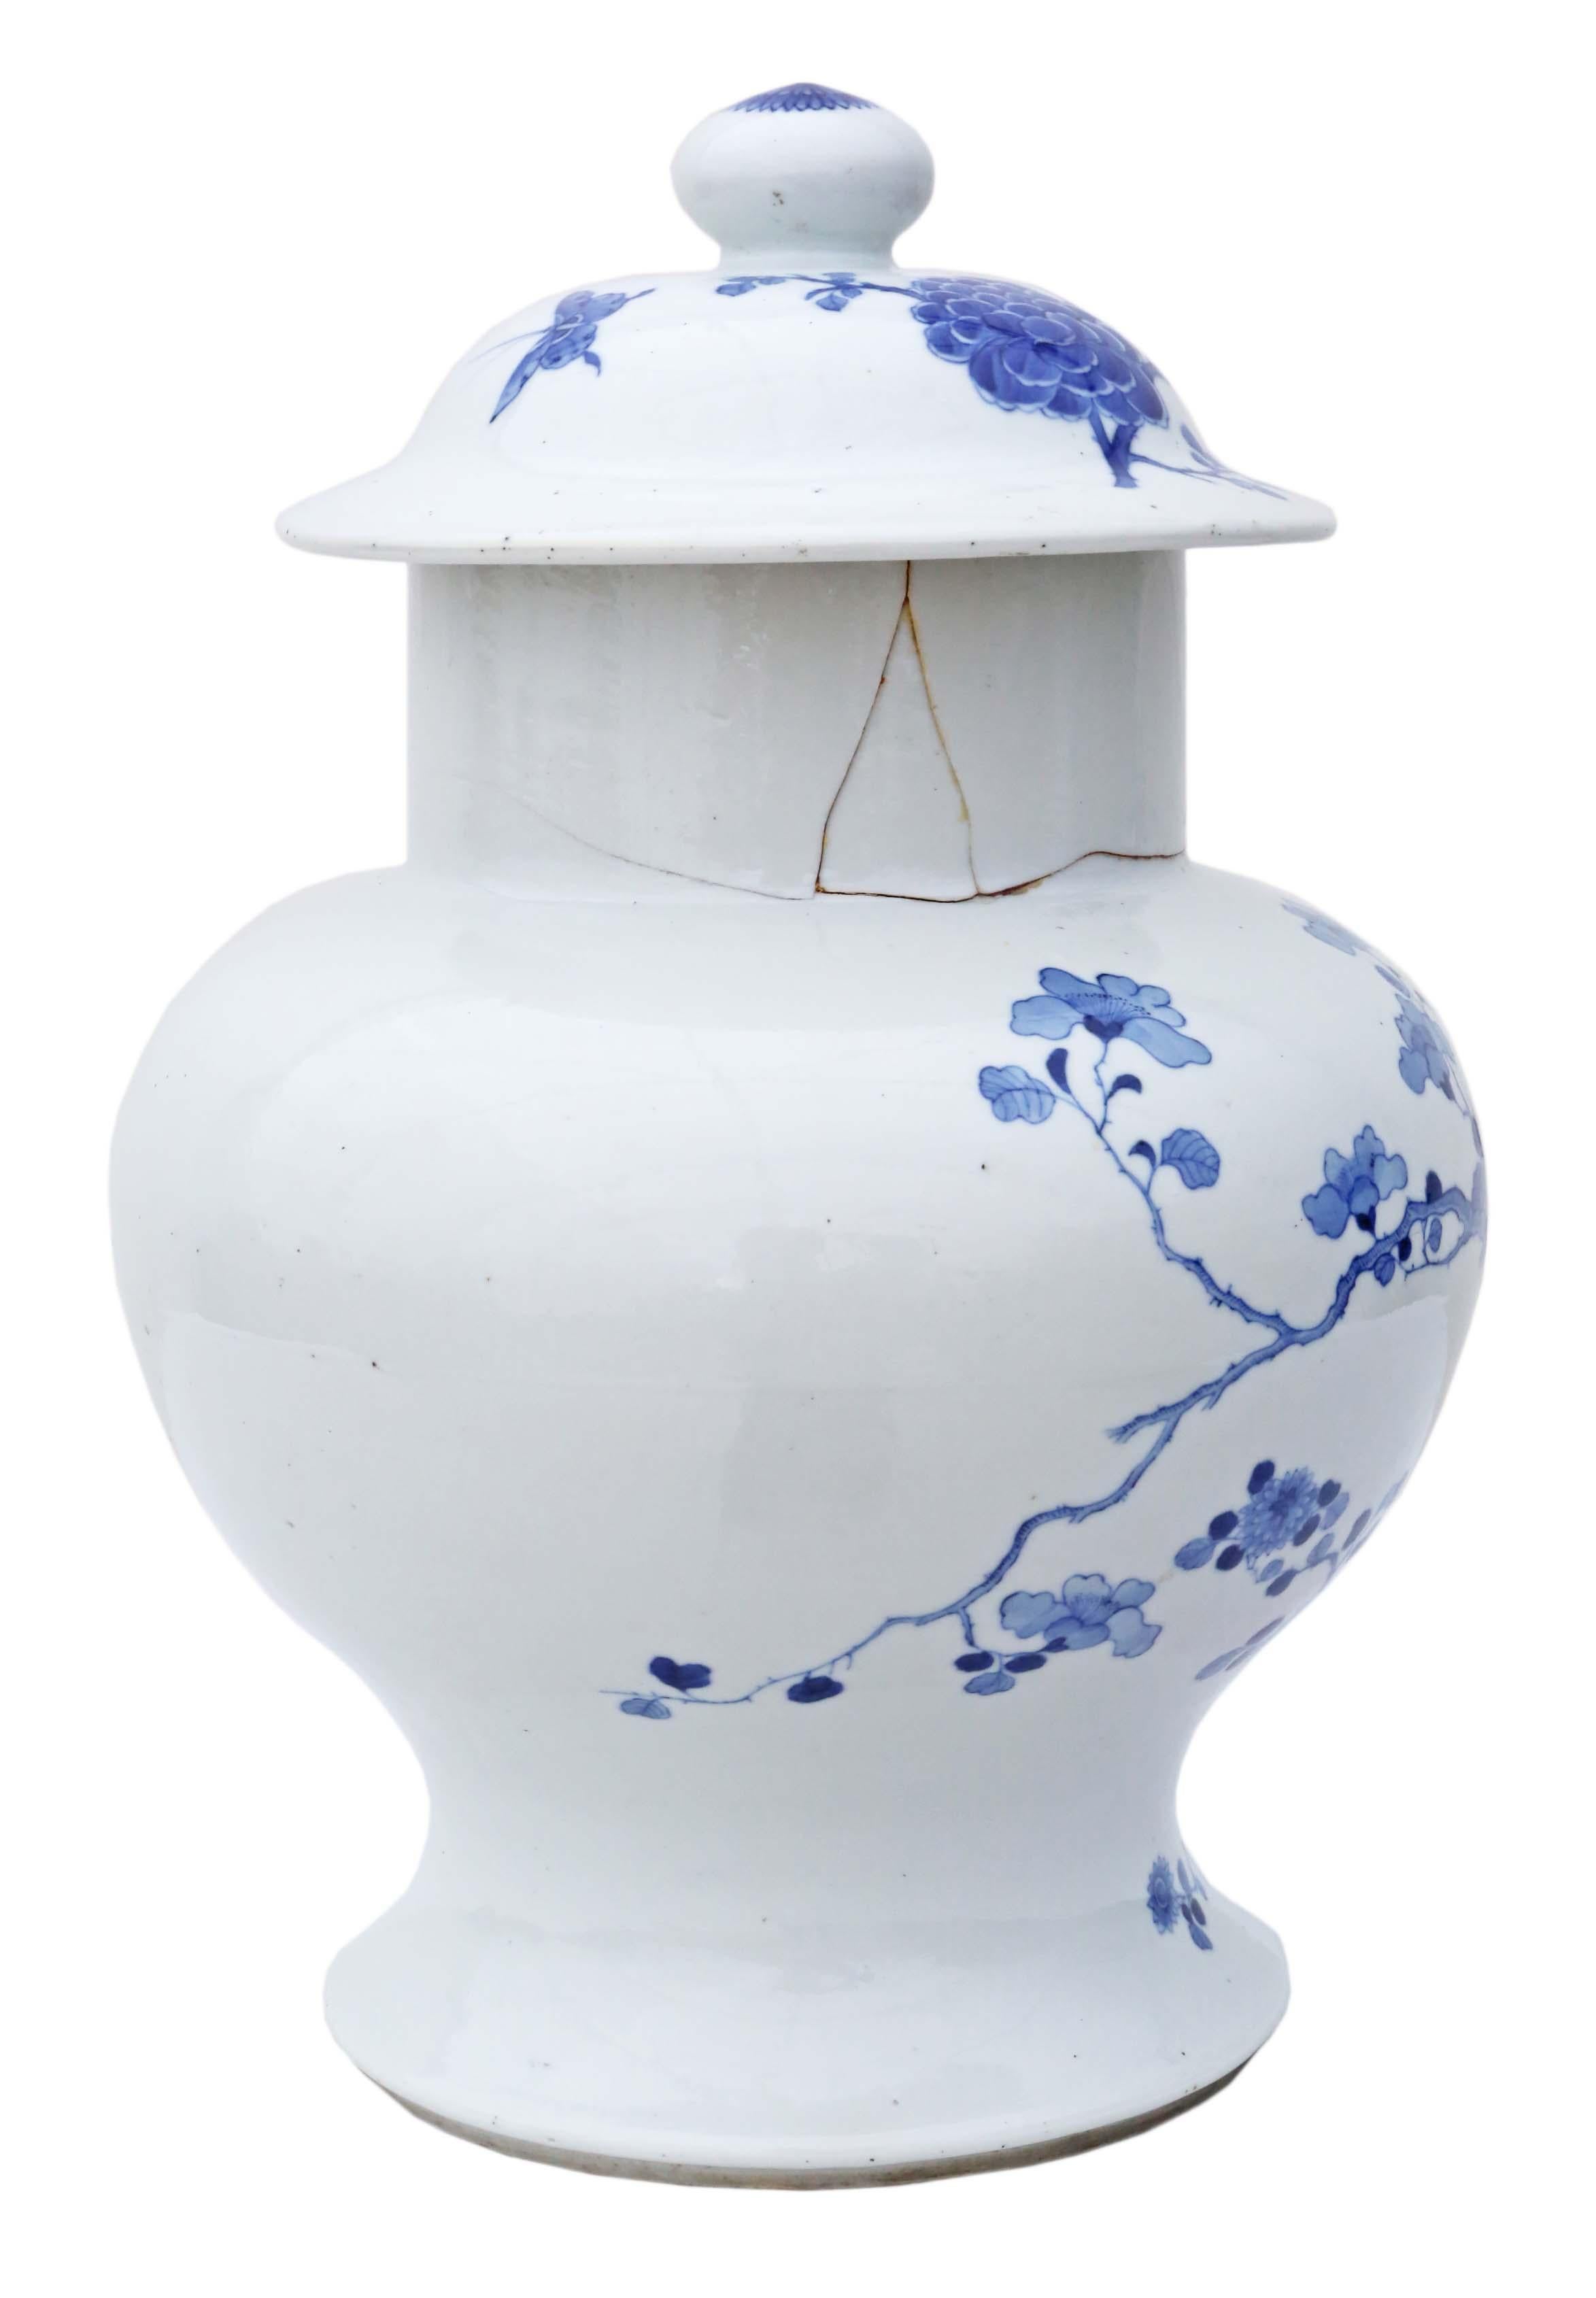 Antico grande barattolo di zenzero in ceramica orientale blu e bianca con coperchio. L'età esatta è incerta, ma si ritiene che risalga alla fine del XVIII o all'inizio del XIX secolo. Presenta un marchio a 6 caratteri sulla base.

Questo pezzo è